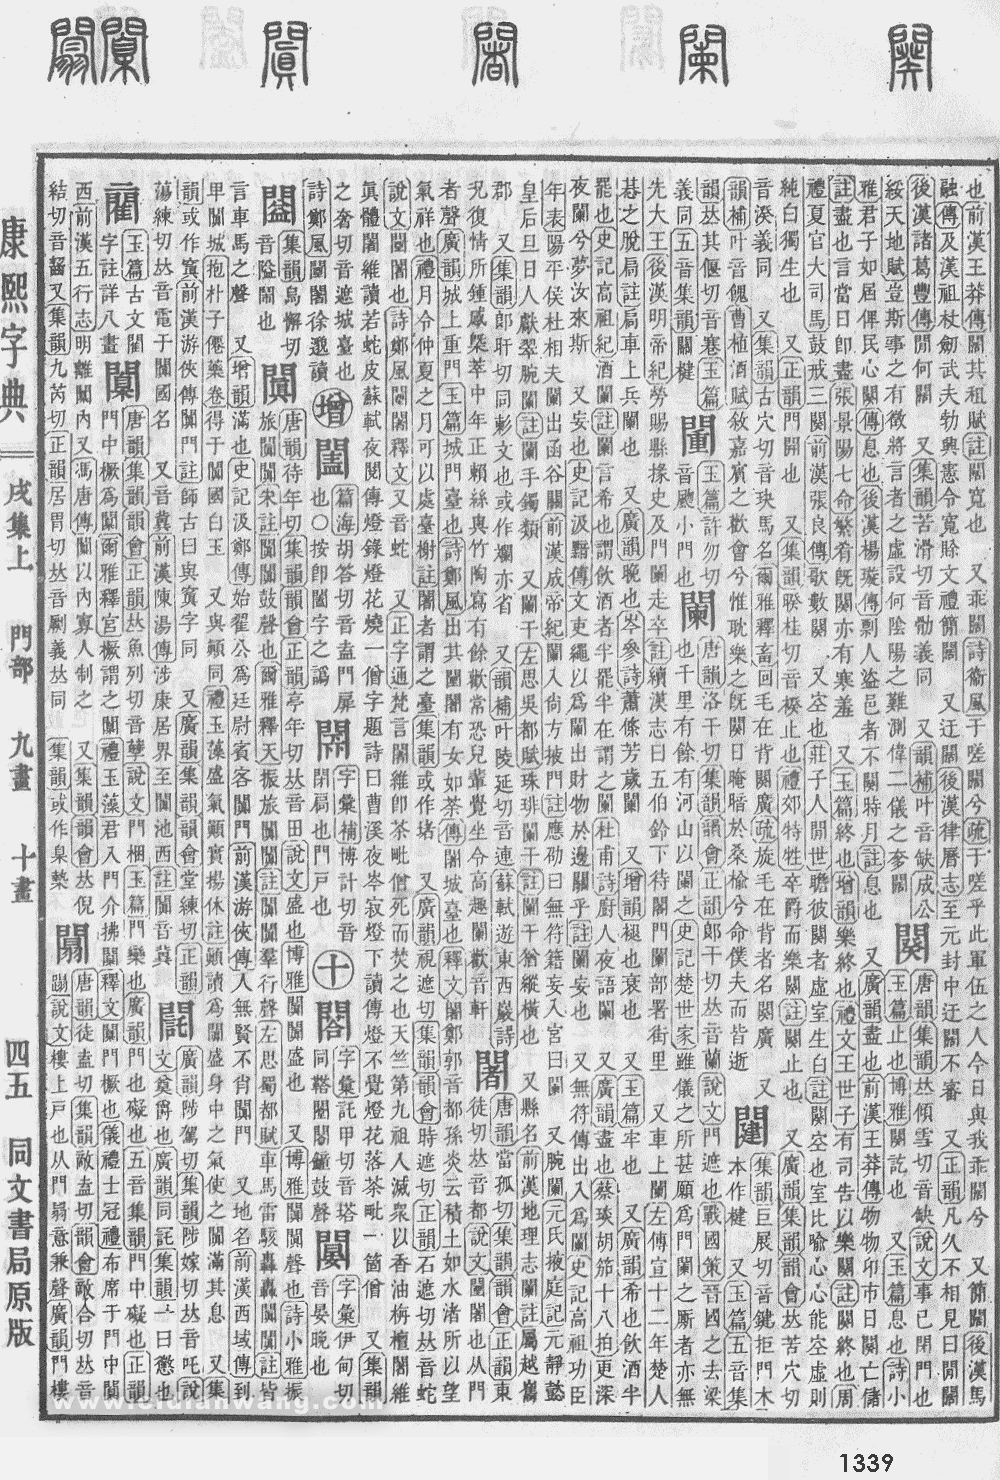 康熙字典掃描版第1339頁